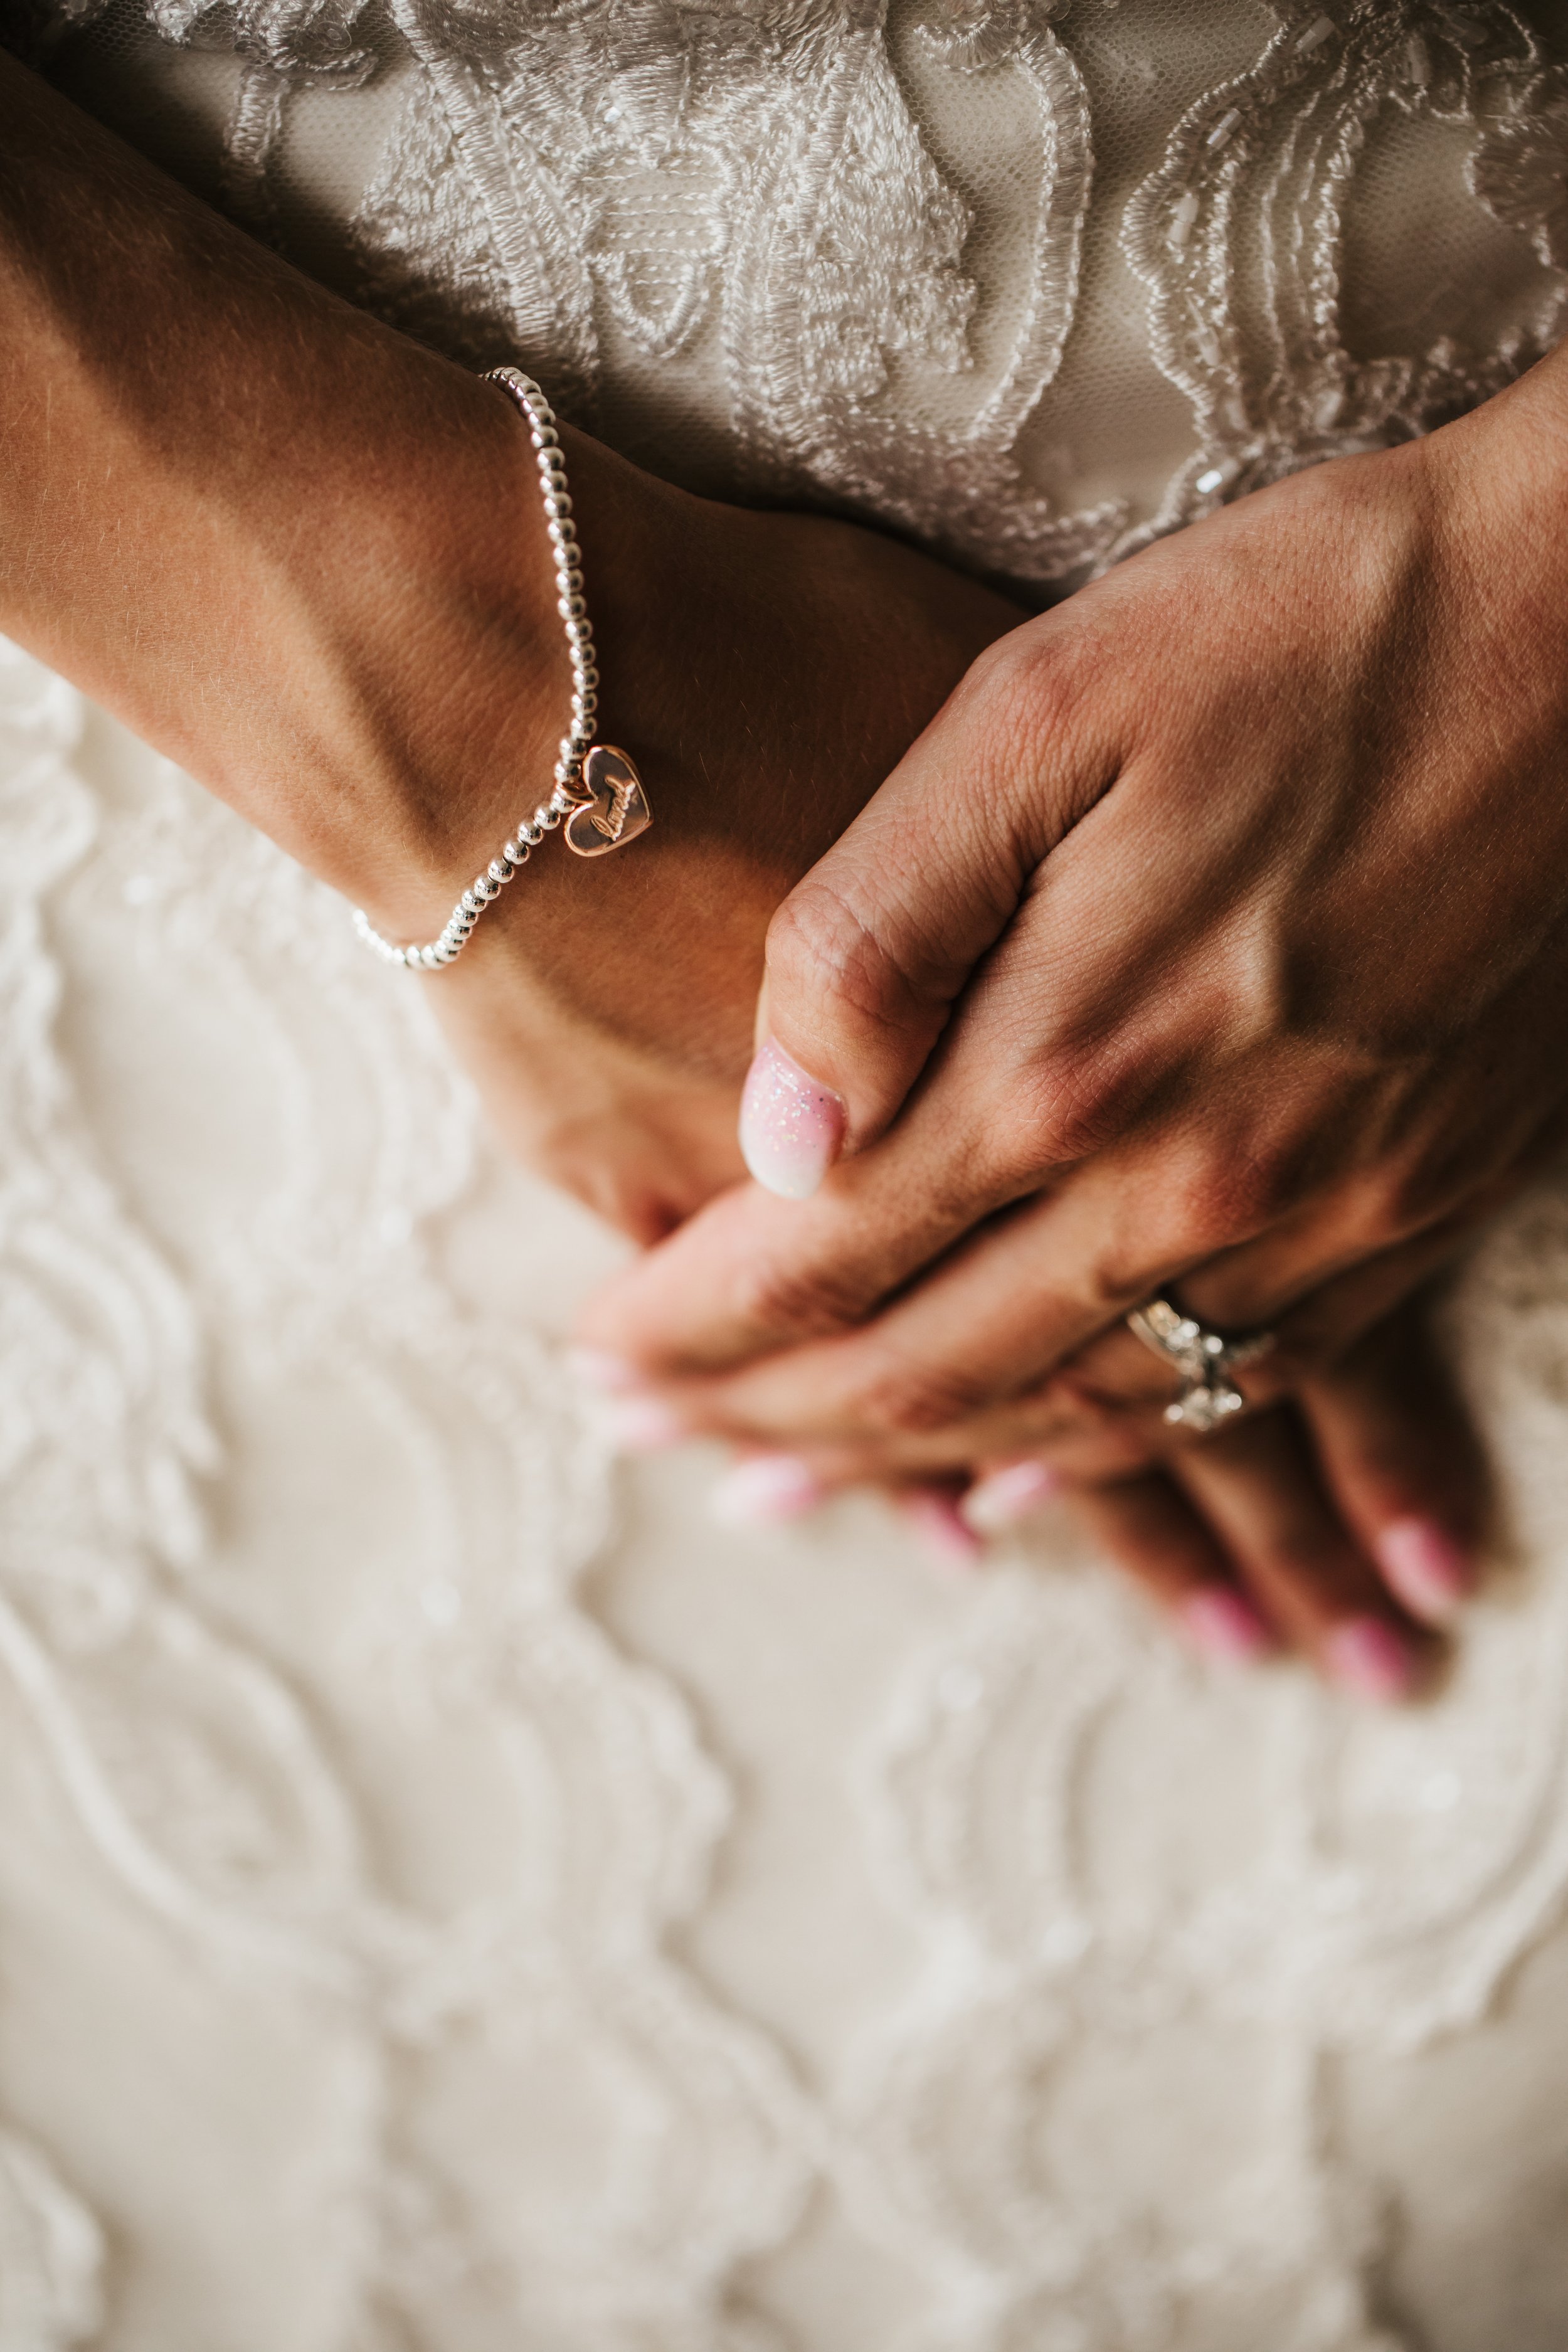  Close up of classic bridal jewelry diamond ring and bracelet lace wedding dress #TealaWardPhotography #illinoisphotographer #princetonillinois #weddingphotographer #intimatewedding 